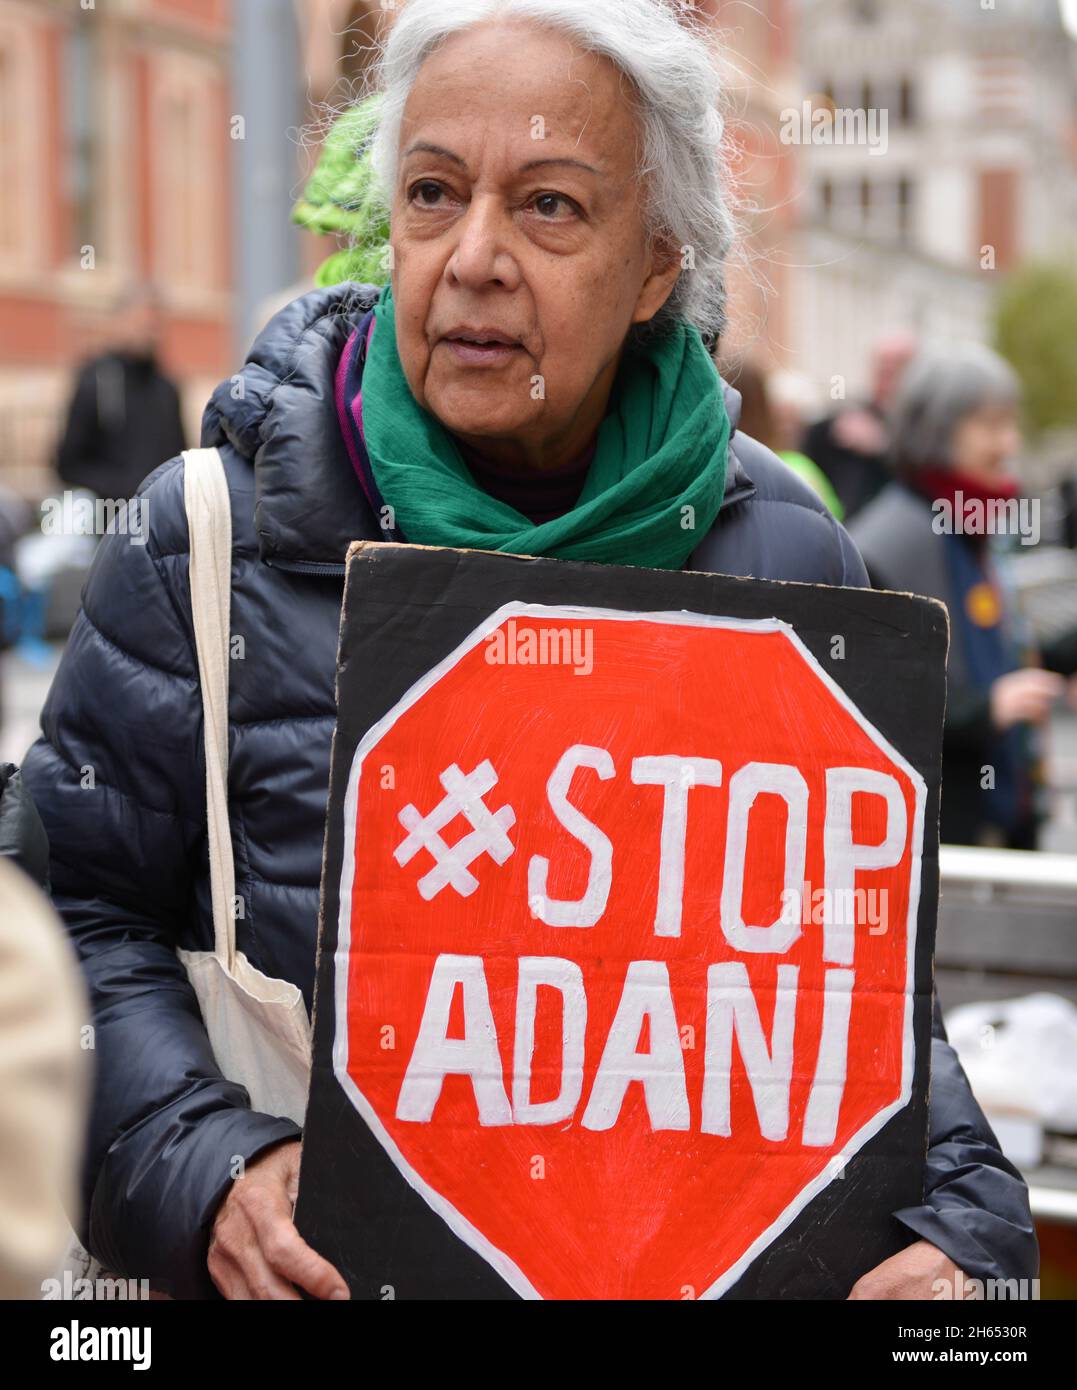 Ein Protestler hält während der Demonstration ein Plakat mit dem Titel „Stop Adani“. Extinction Rebellion-Aktivisten veranstalteten einen Protest gegenüber dem Science Museum in South Kensington gegen das Sponsoring des Museums durch die fossilen Energiekonzerne Shell und Adani. Stockfoto